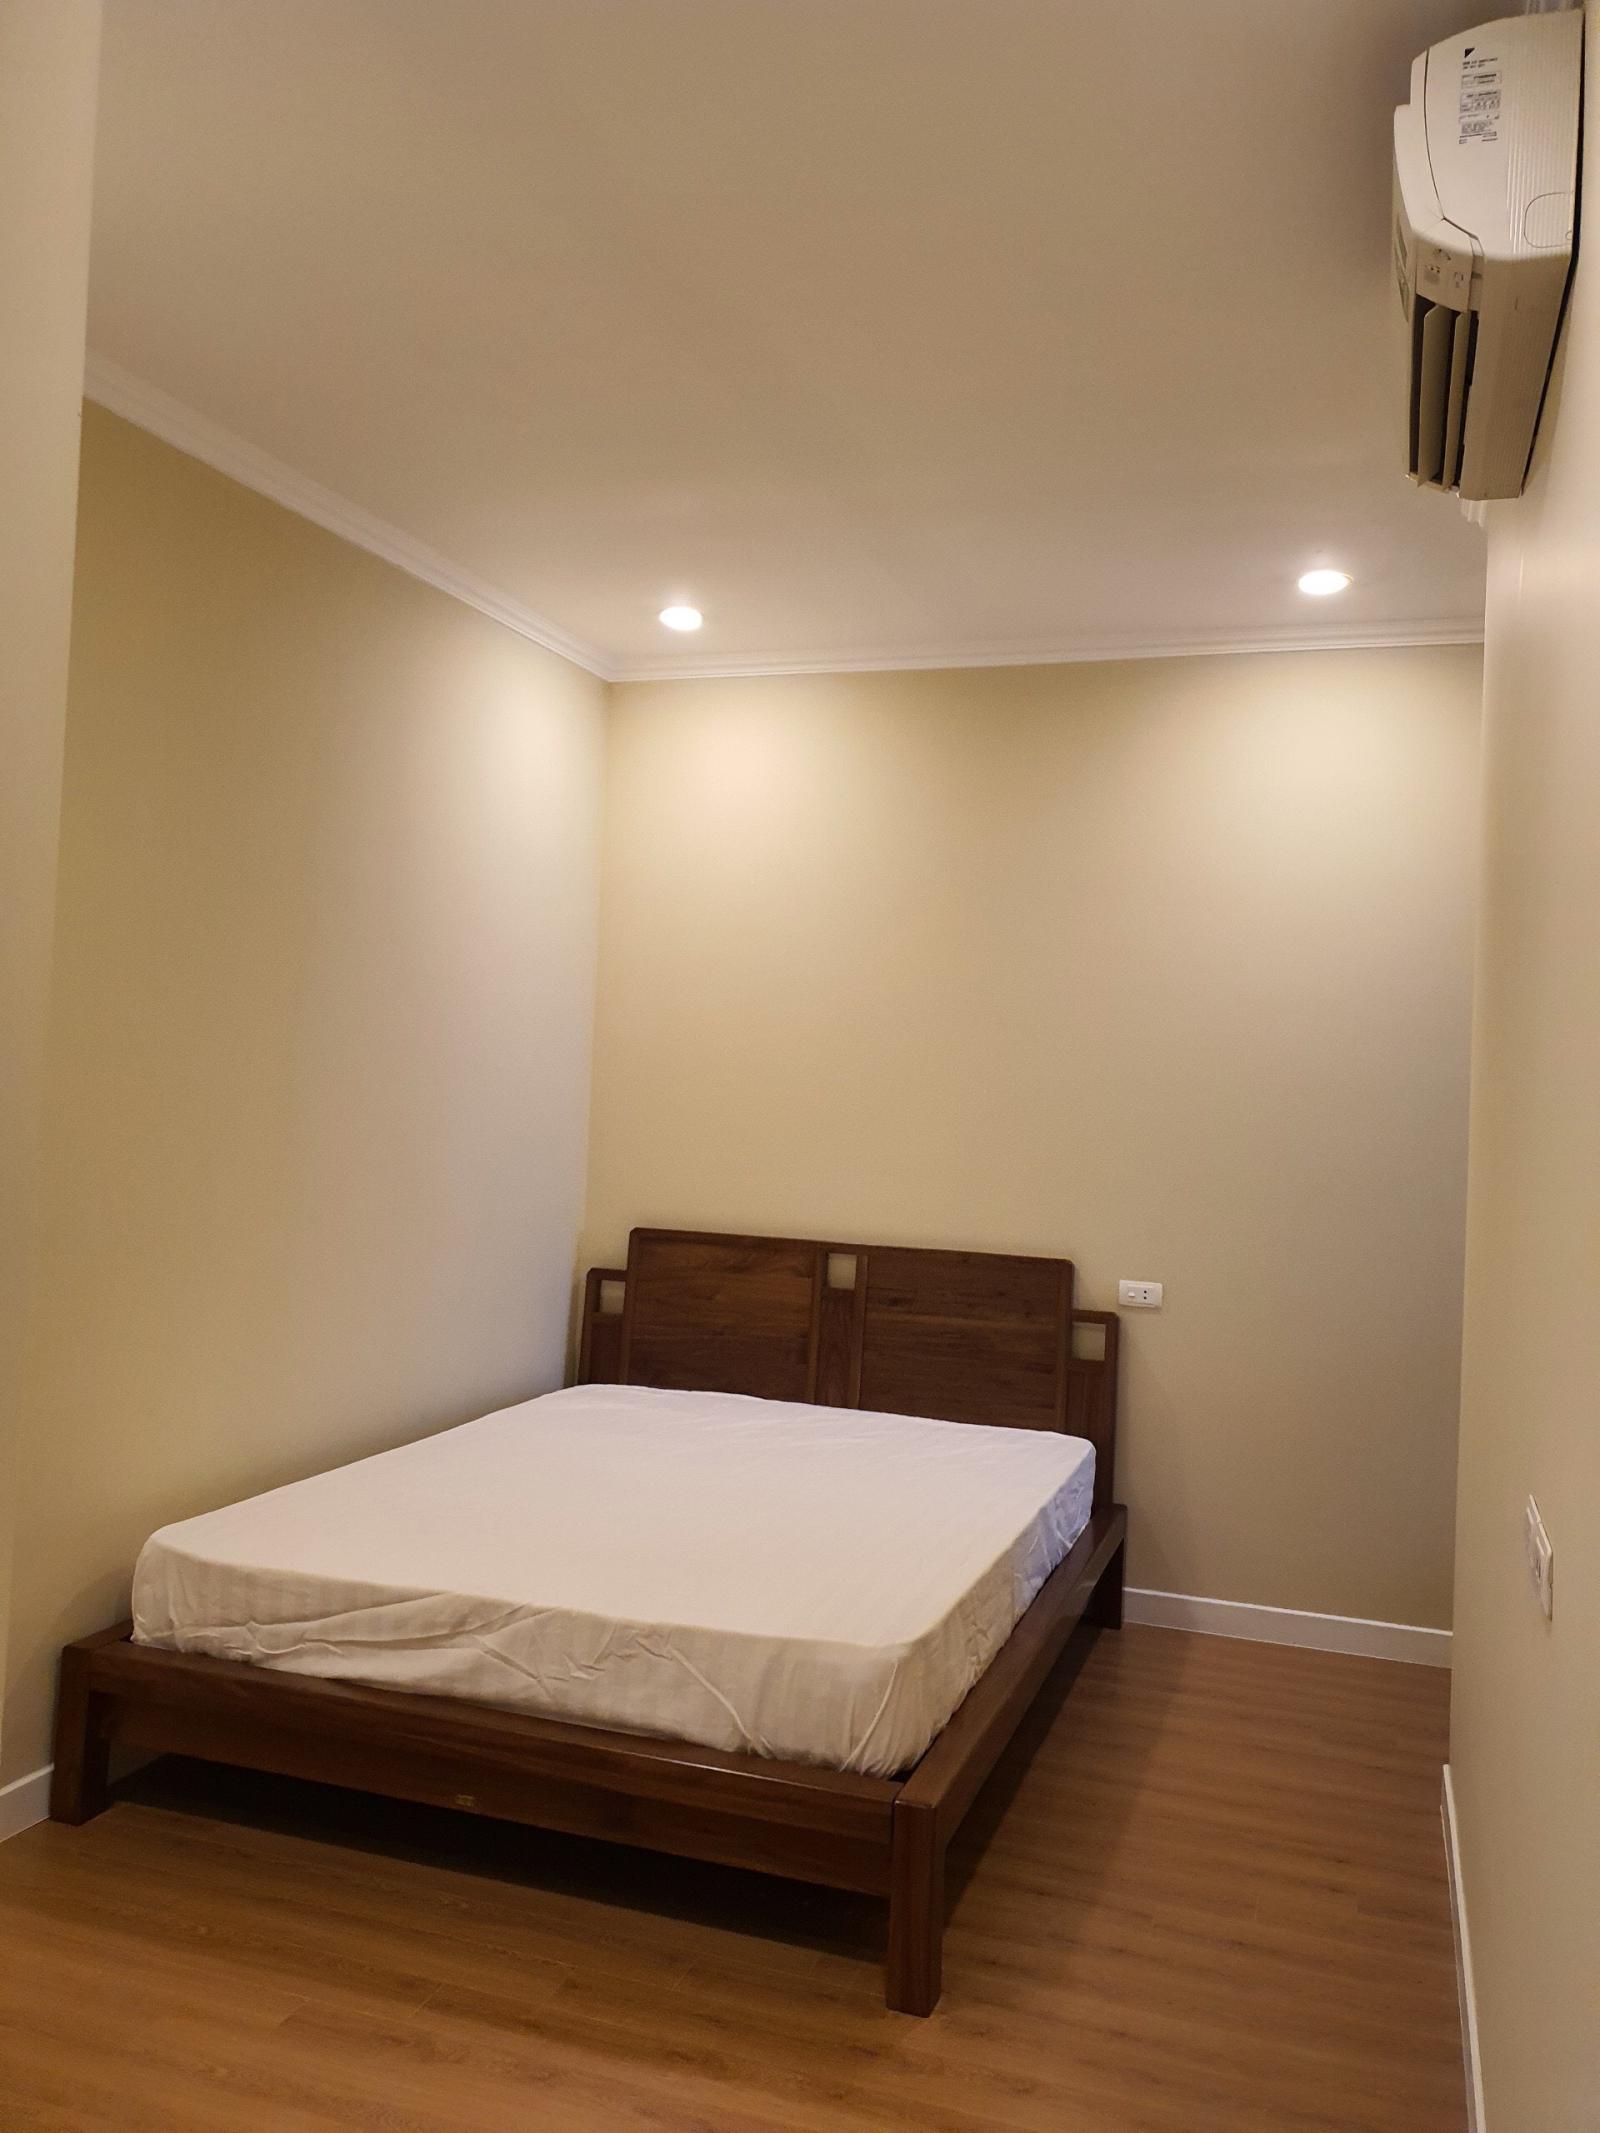 Cho thuê căn hộ Vinhomes 54 Nguyễn Chí Thanh 86m2 2PN full nội thất giá từ 22tr/tháng – 0388728675 1002672